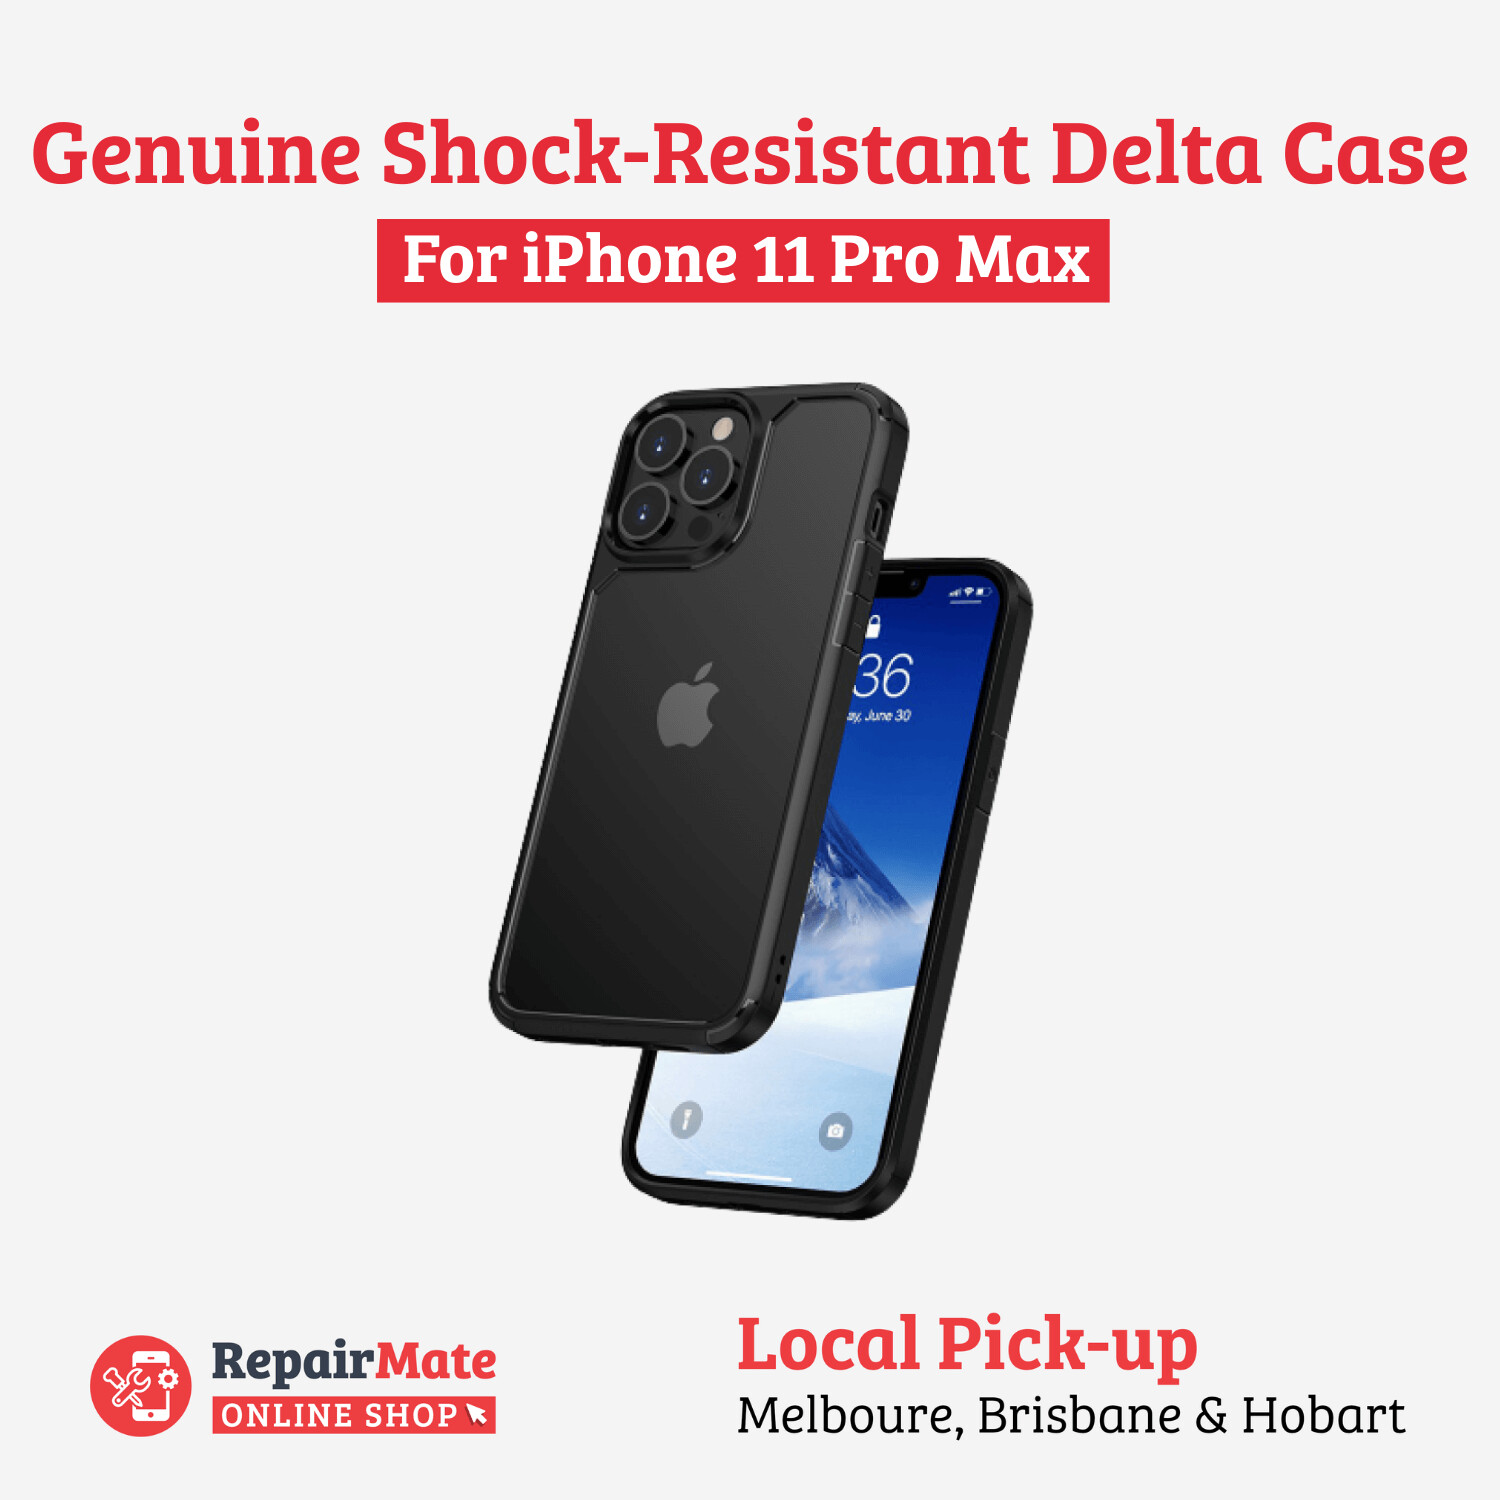 iPhone 11 Pro Max Genuine Shock-Resistant Delta Case